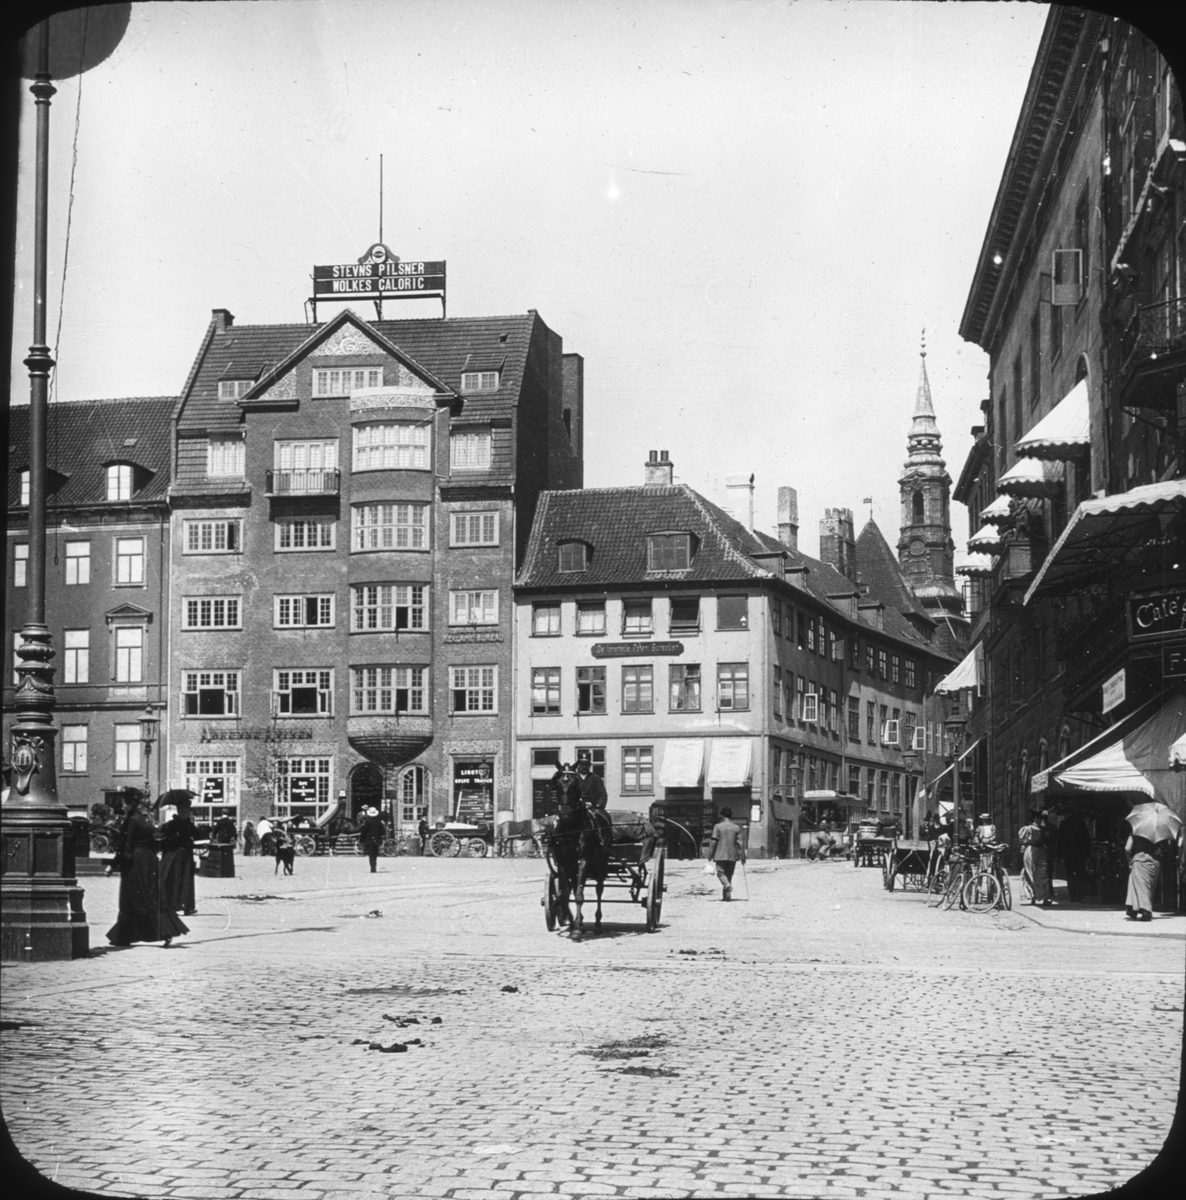 Skioptikonbild med torgmotiv från Gammeltorvet i Köpenhamn. I bakgrunden St Petri kirke.
Bilden har förvarats i kartong märkt: ?